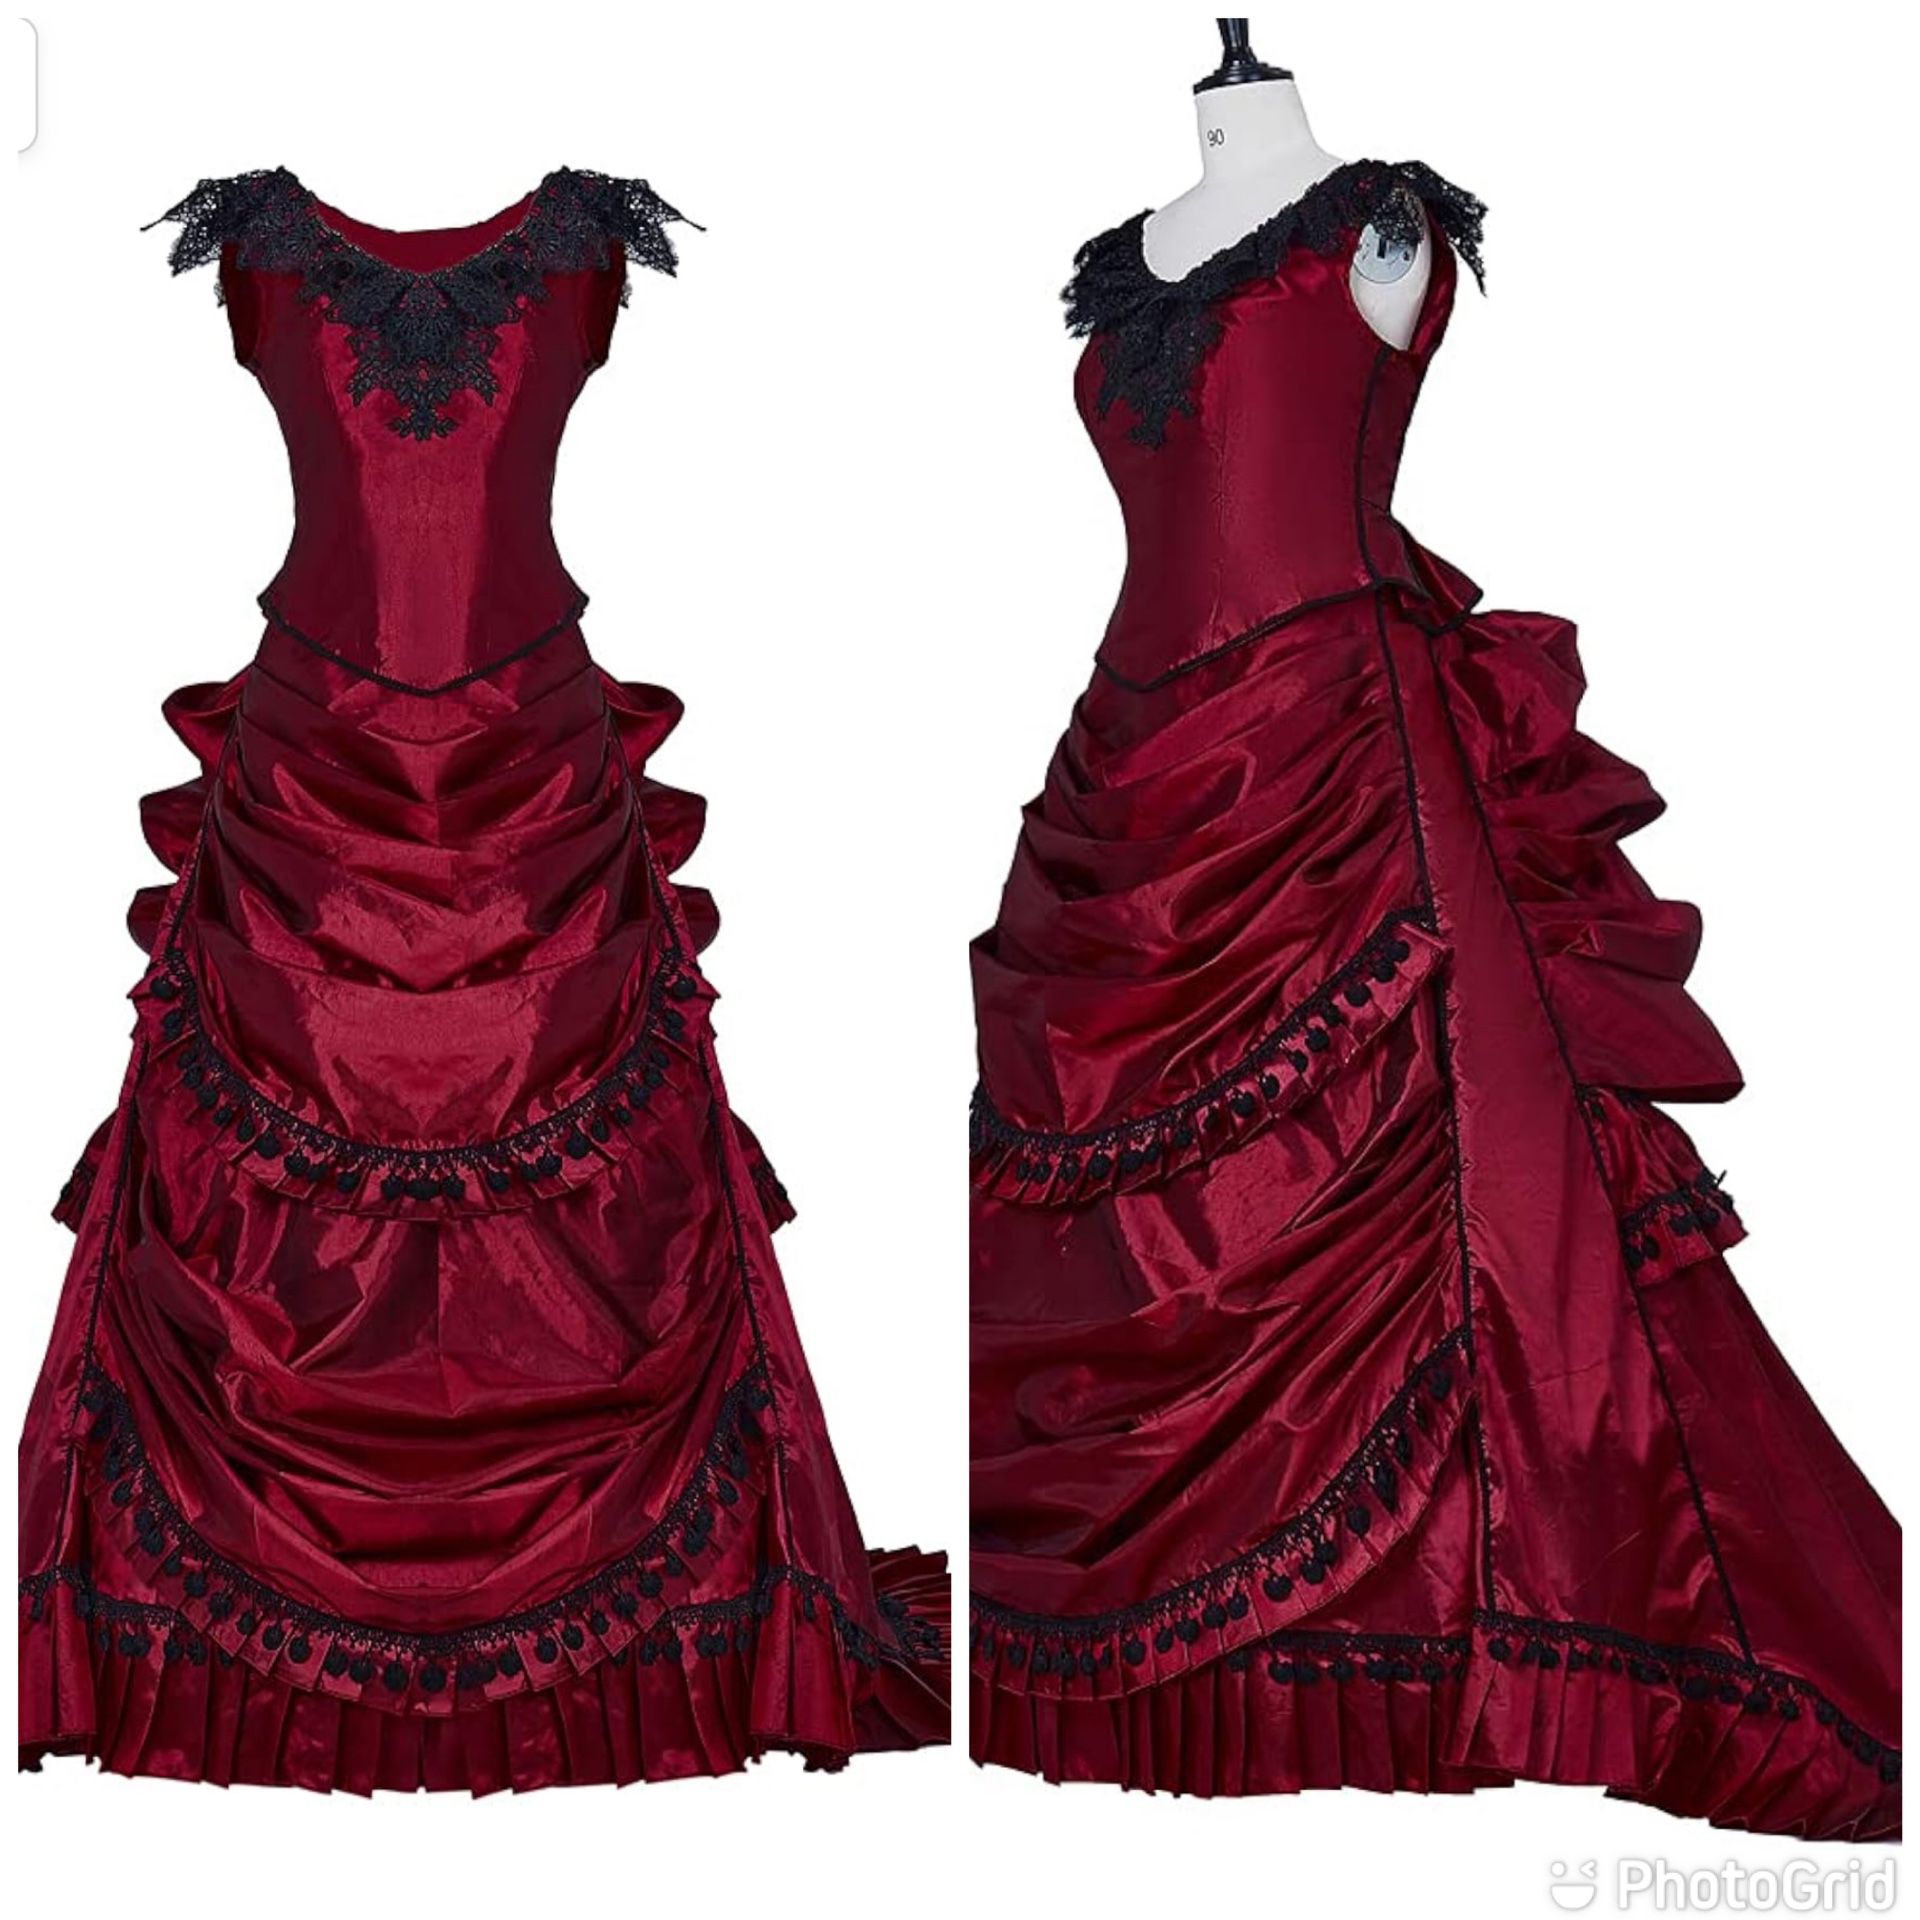 New Gothic Victorian Bustle Wedding Gown Renaissance Vintage Steampunk Ball Dress Size Medium 